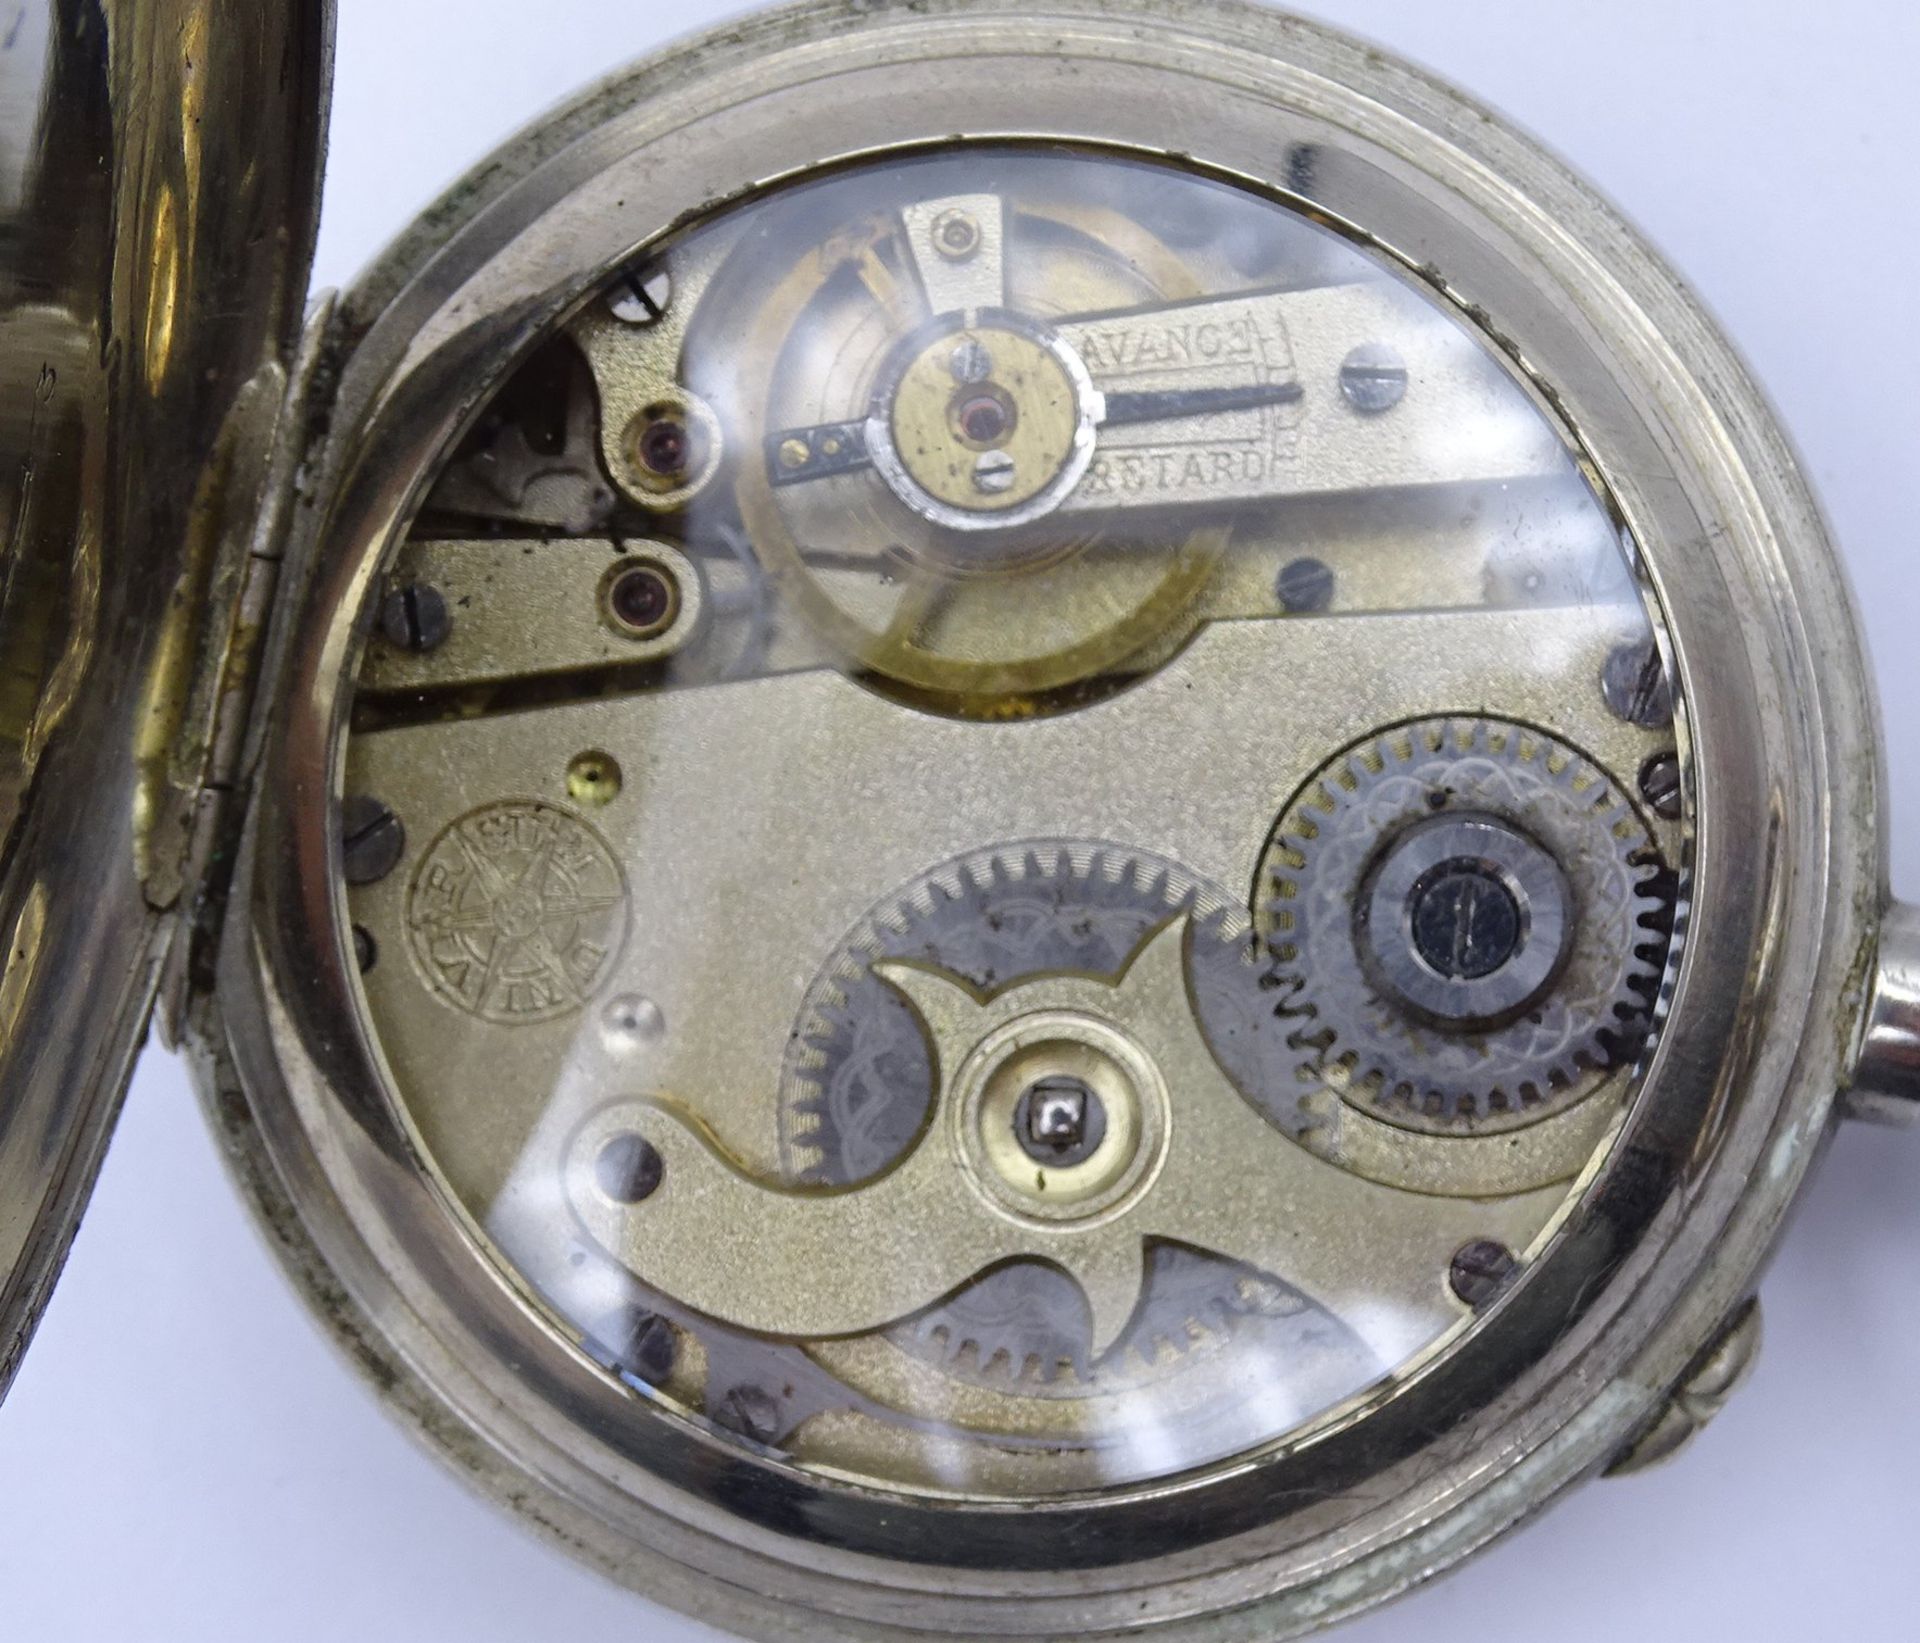 Eisenbahner Taschenuhr "Universum Patent" D. 53mm, mechanisch, Werk läuft, Zifferblatt auf 1 Uhr be - Bild 5 aus 5